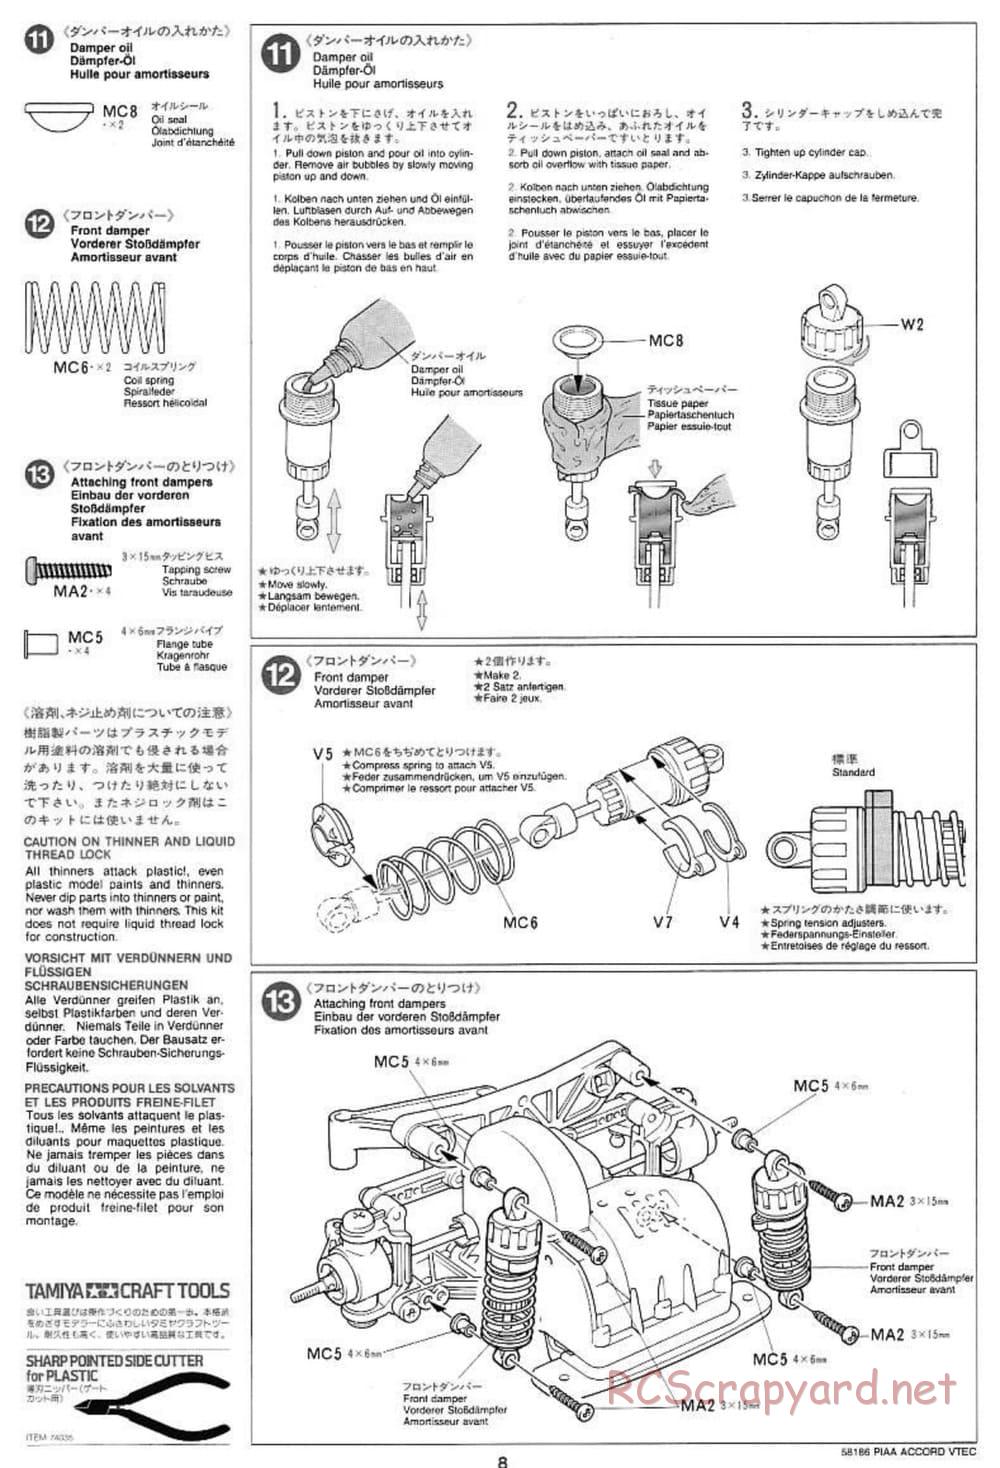 Tamiya - PIAA Accord VTEC - FF-01 Chassis - Manual - Page 8